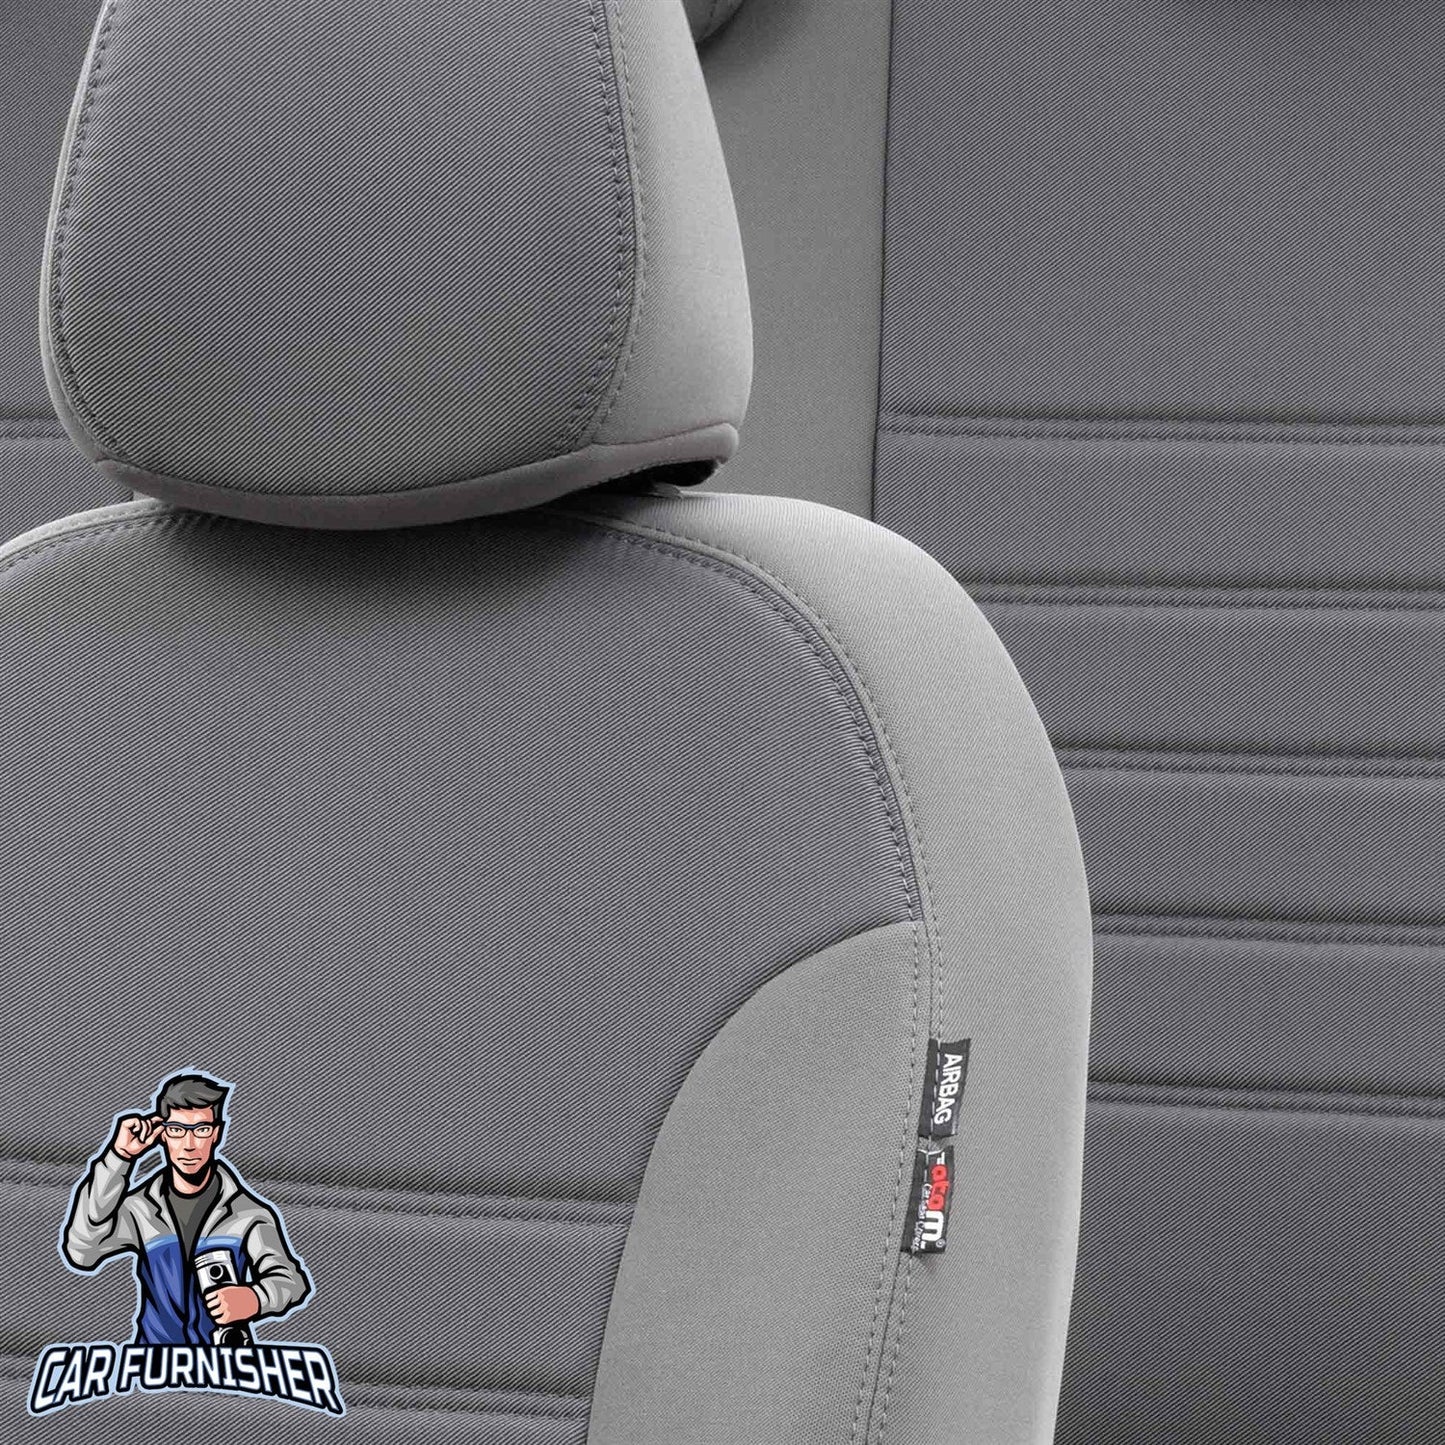 Toyota Aygo Seat Cover Original Jacquard Design Gray Jacquard Fabric